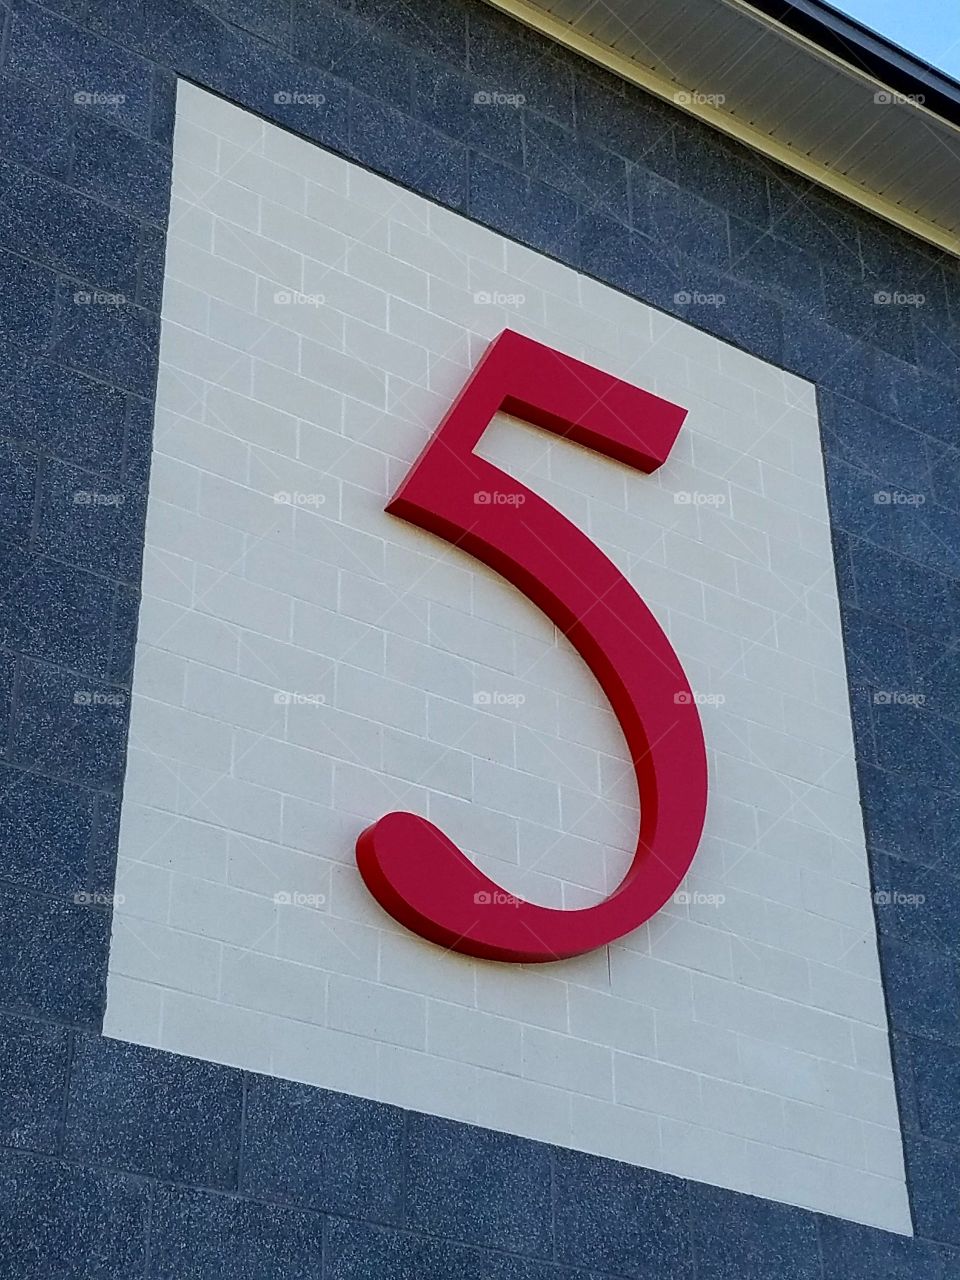 No. 5